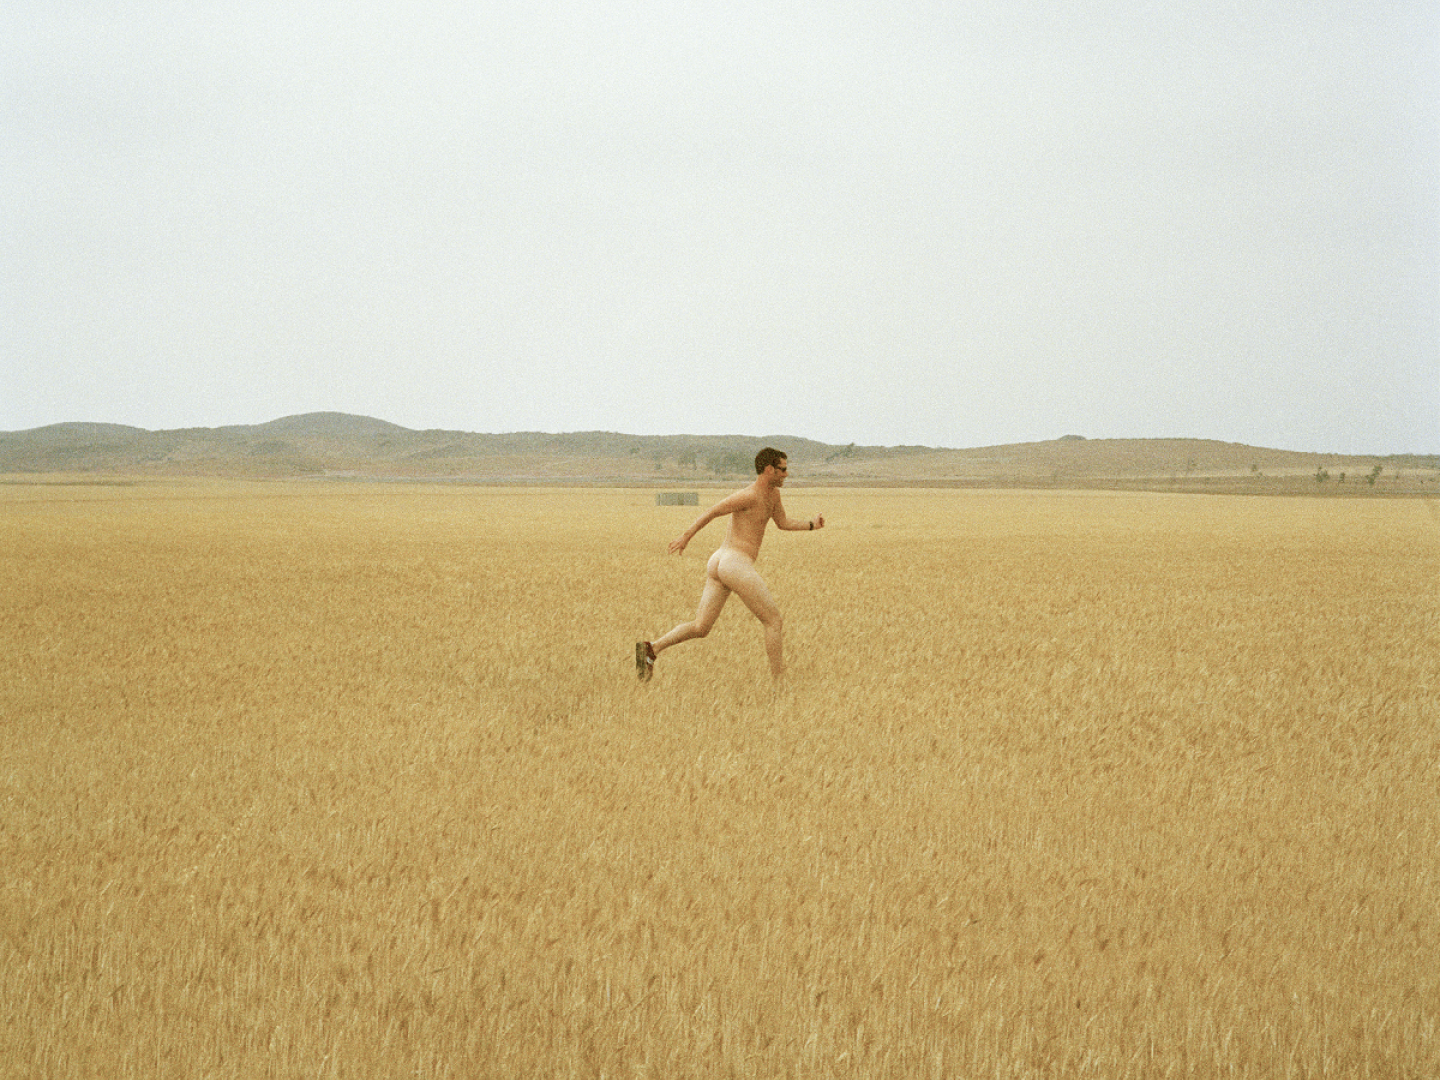 Das Foto zeigt einen nackten, laufenden Menschen auf einem Feld